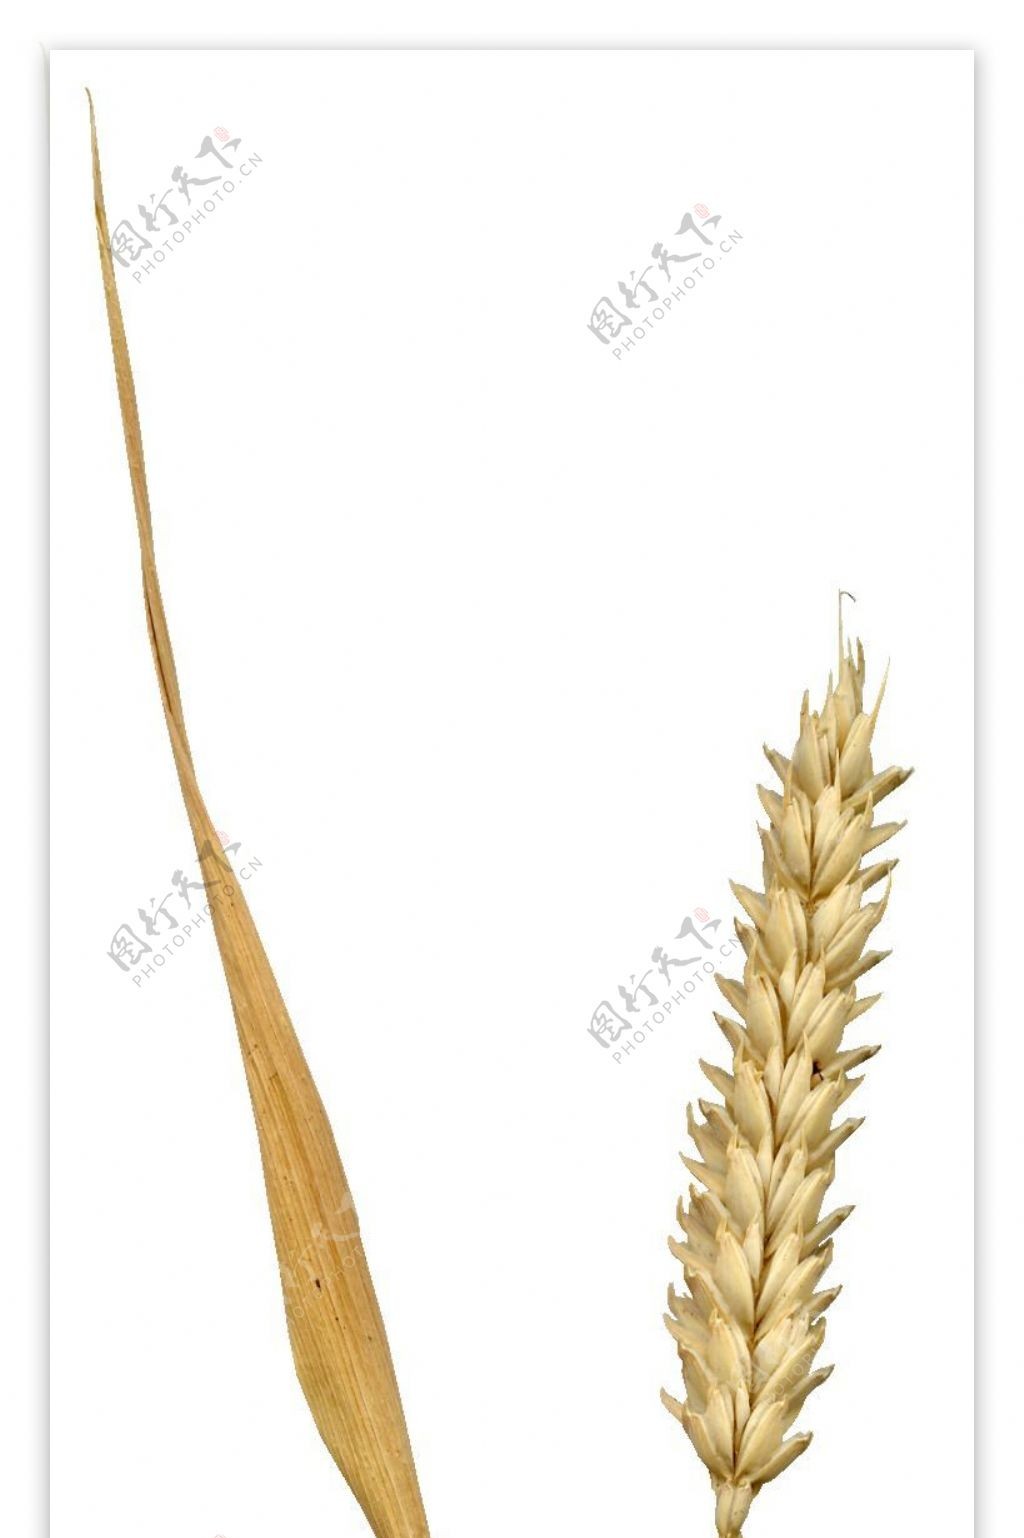 小麦树叶植物3D材质贴图素材2